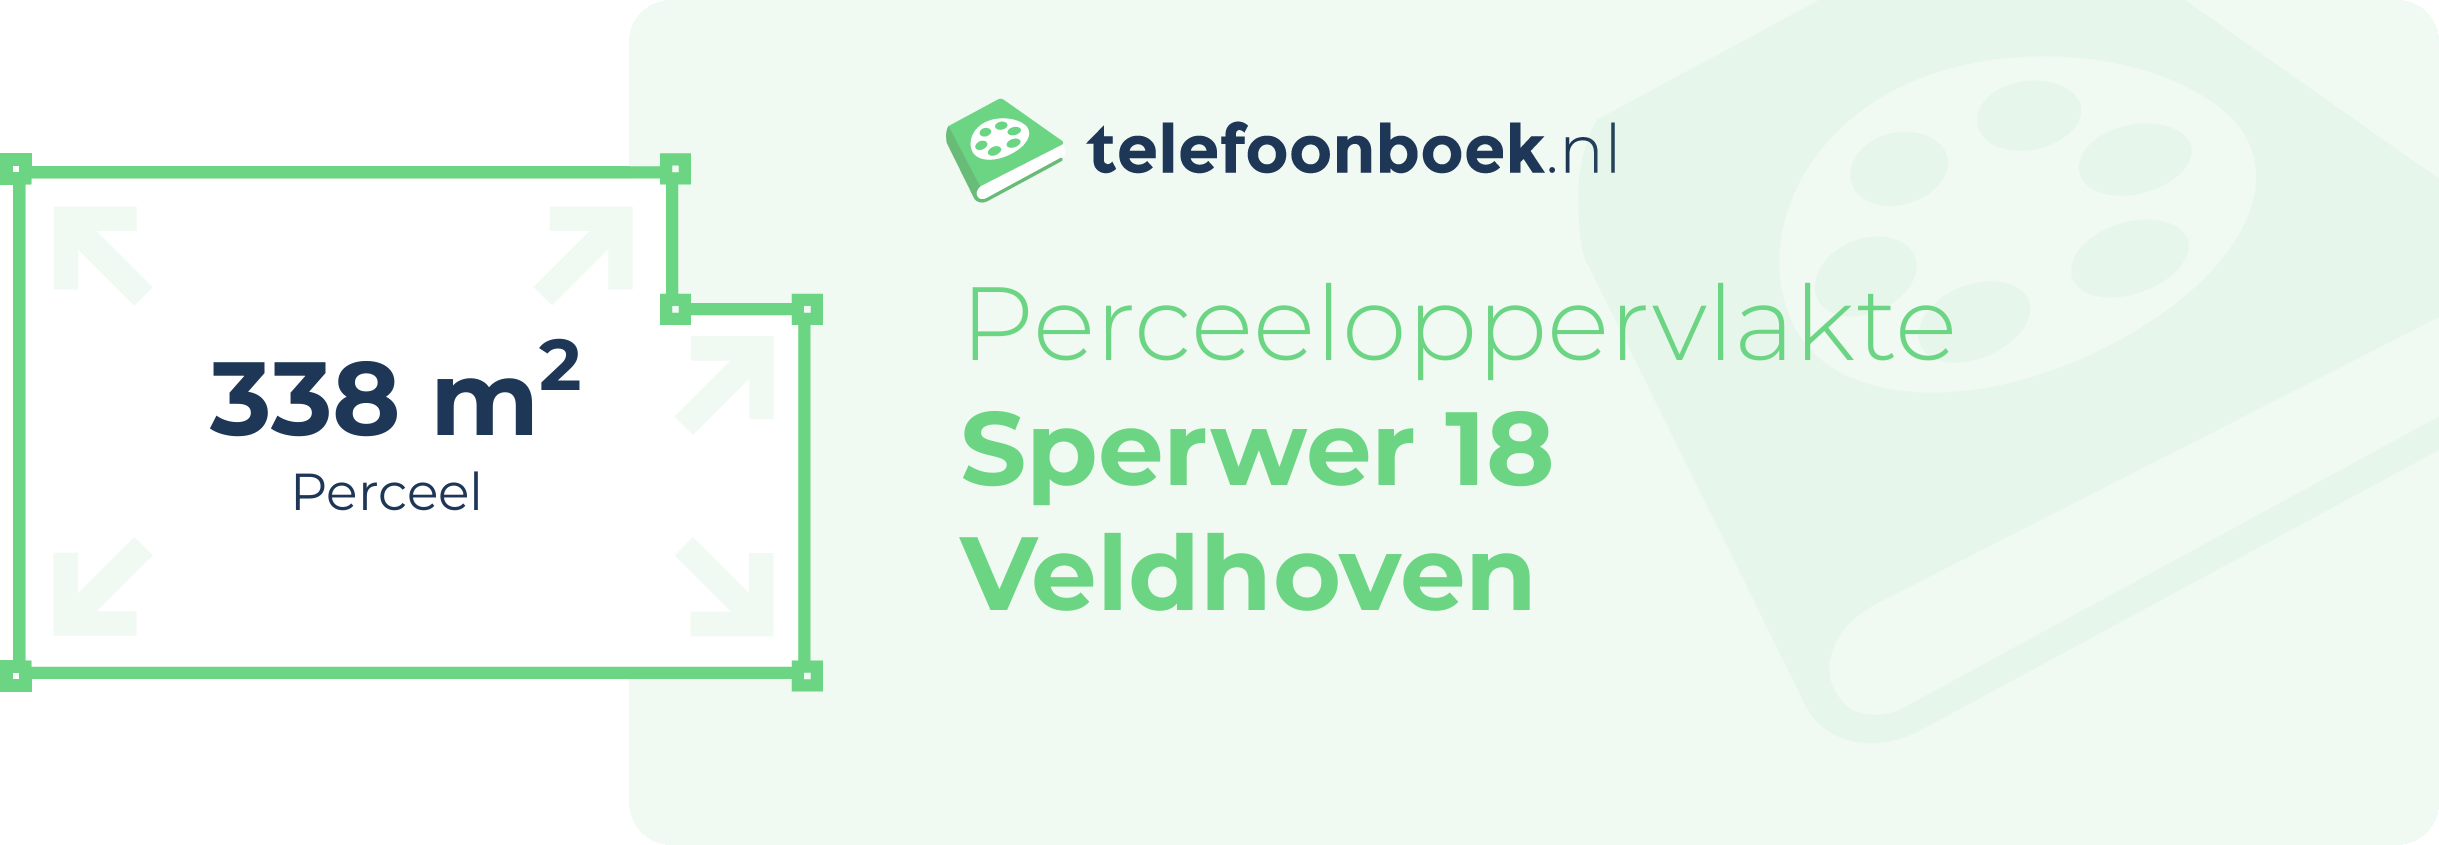 Perceeloppervlakte Sperwer 18 Veldhoven